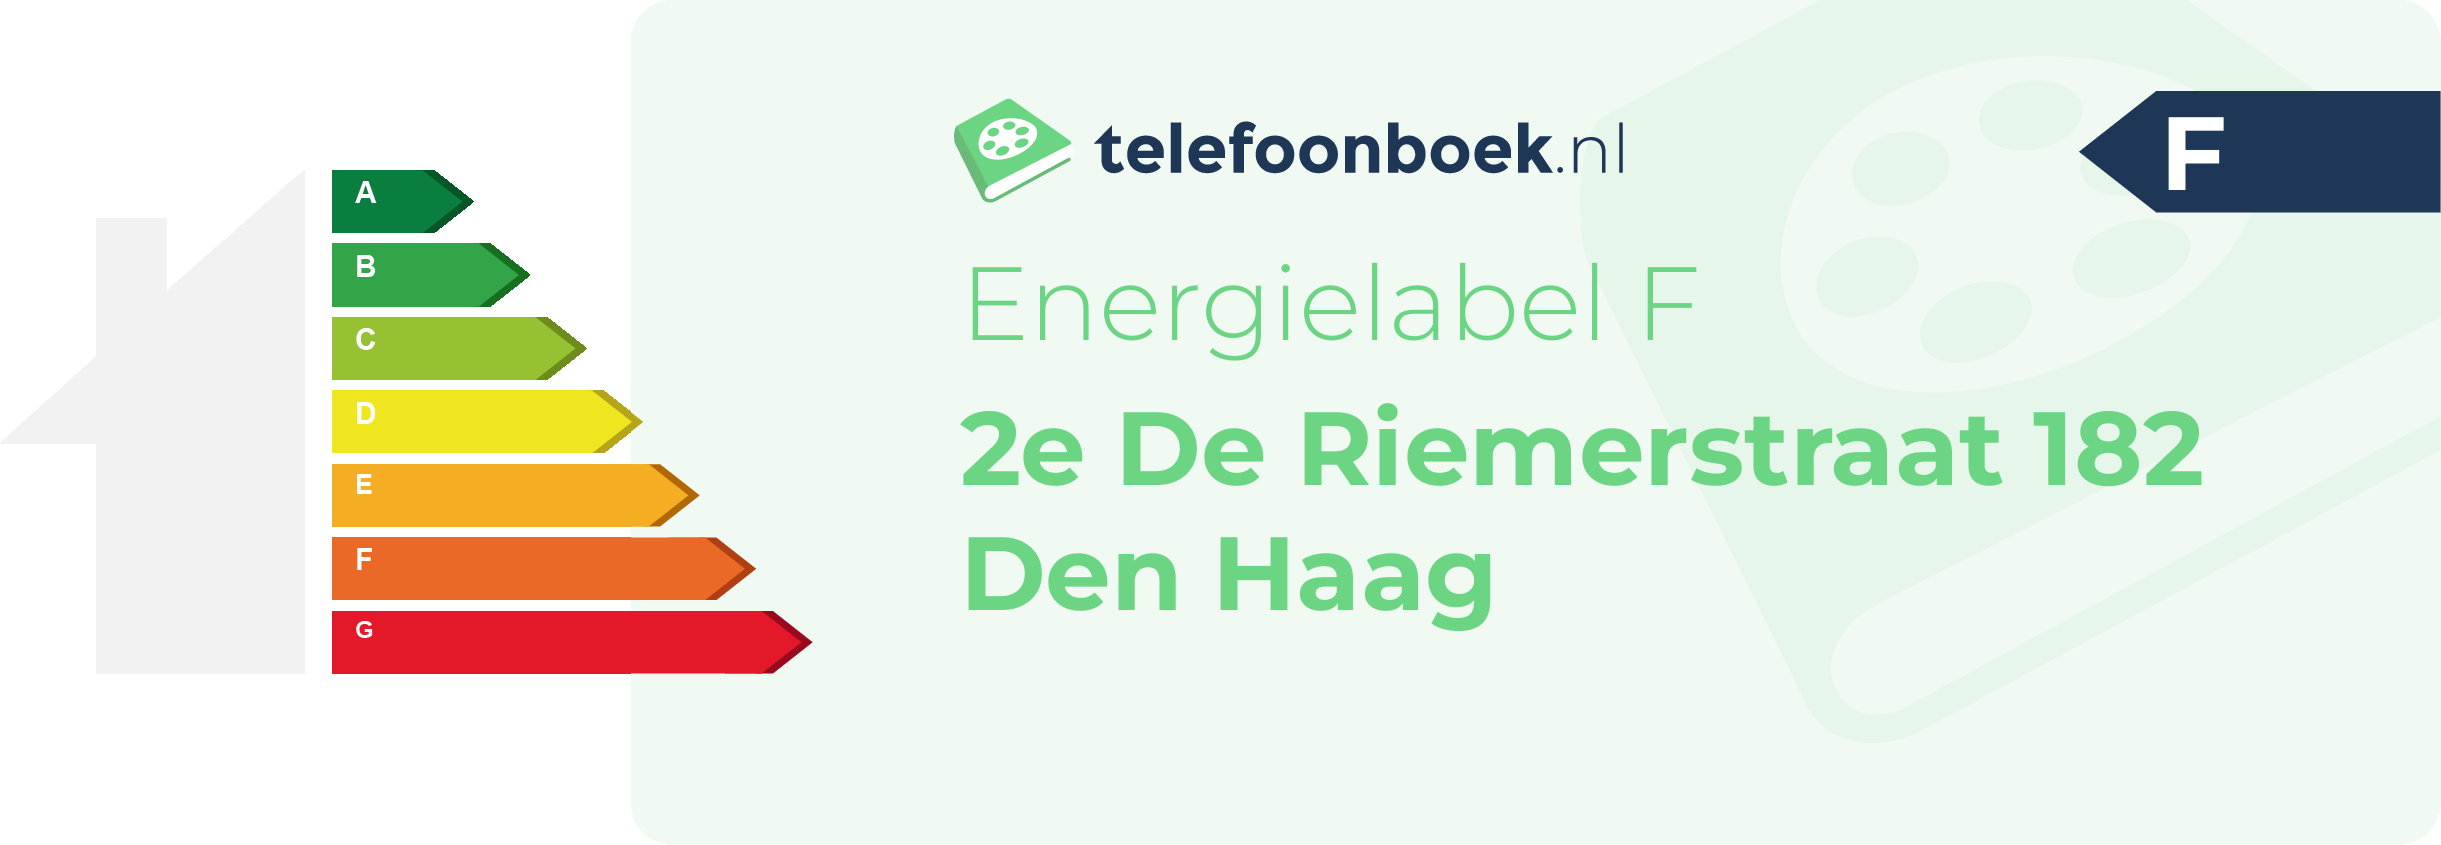 Energielabel 2e De Riemerstraat 182 Den Haag